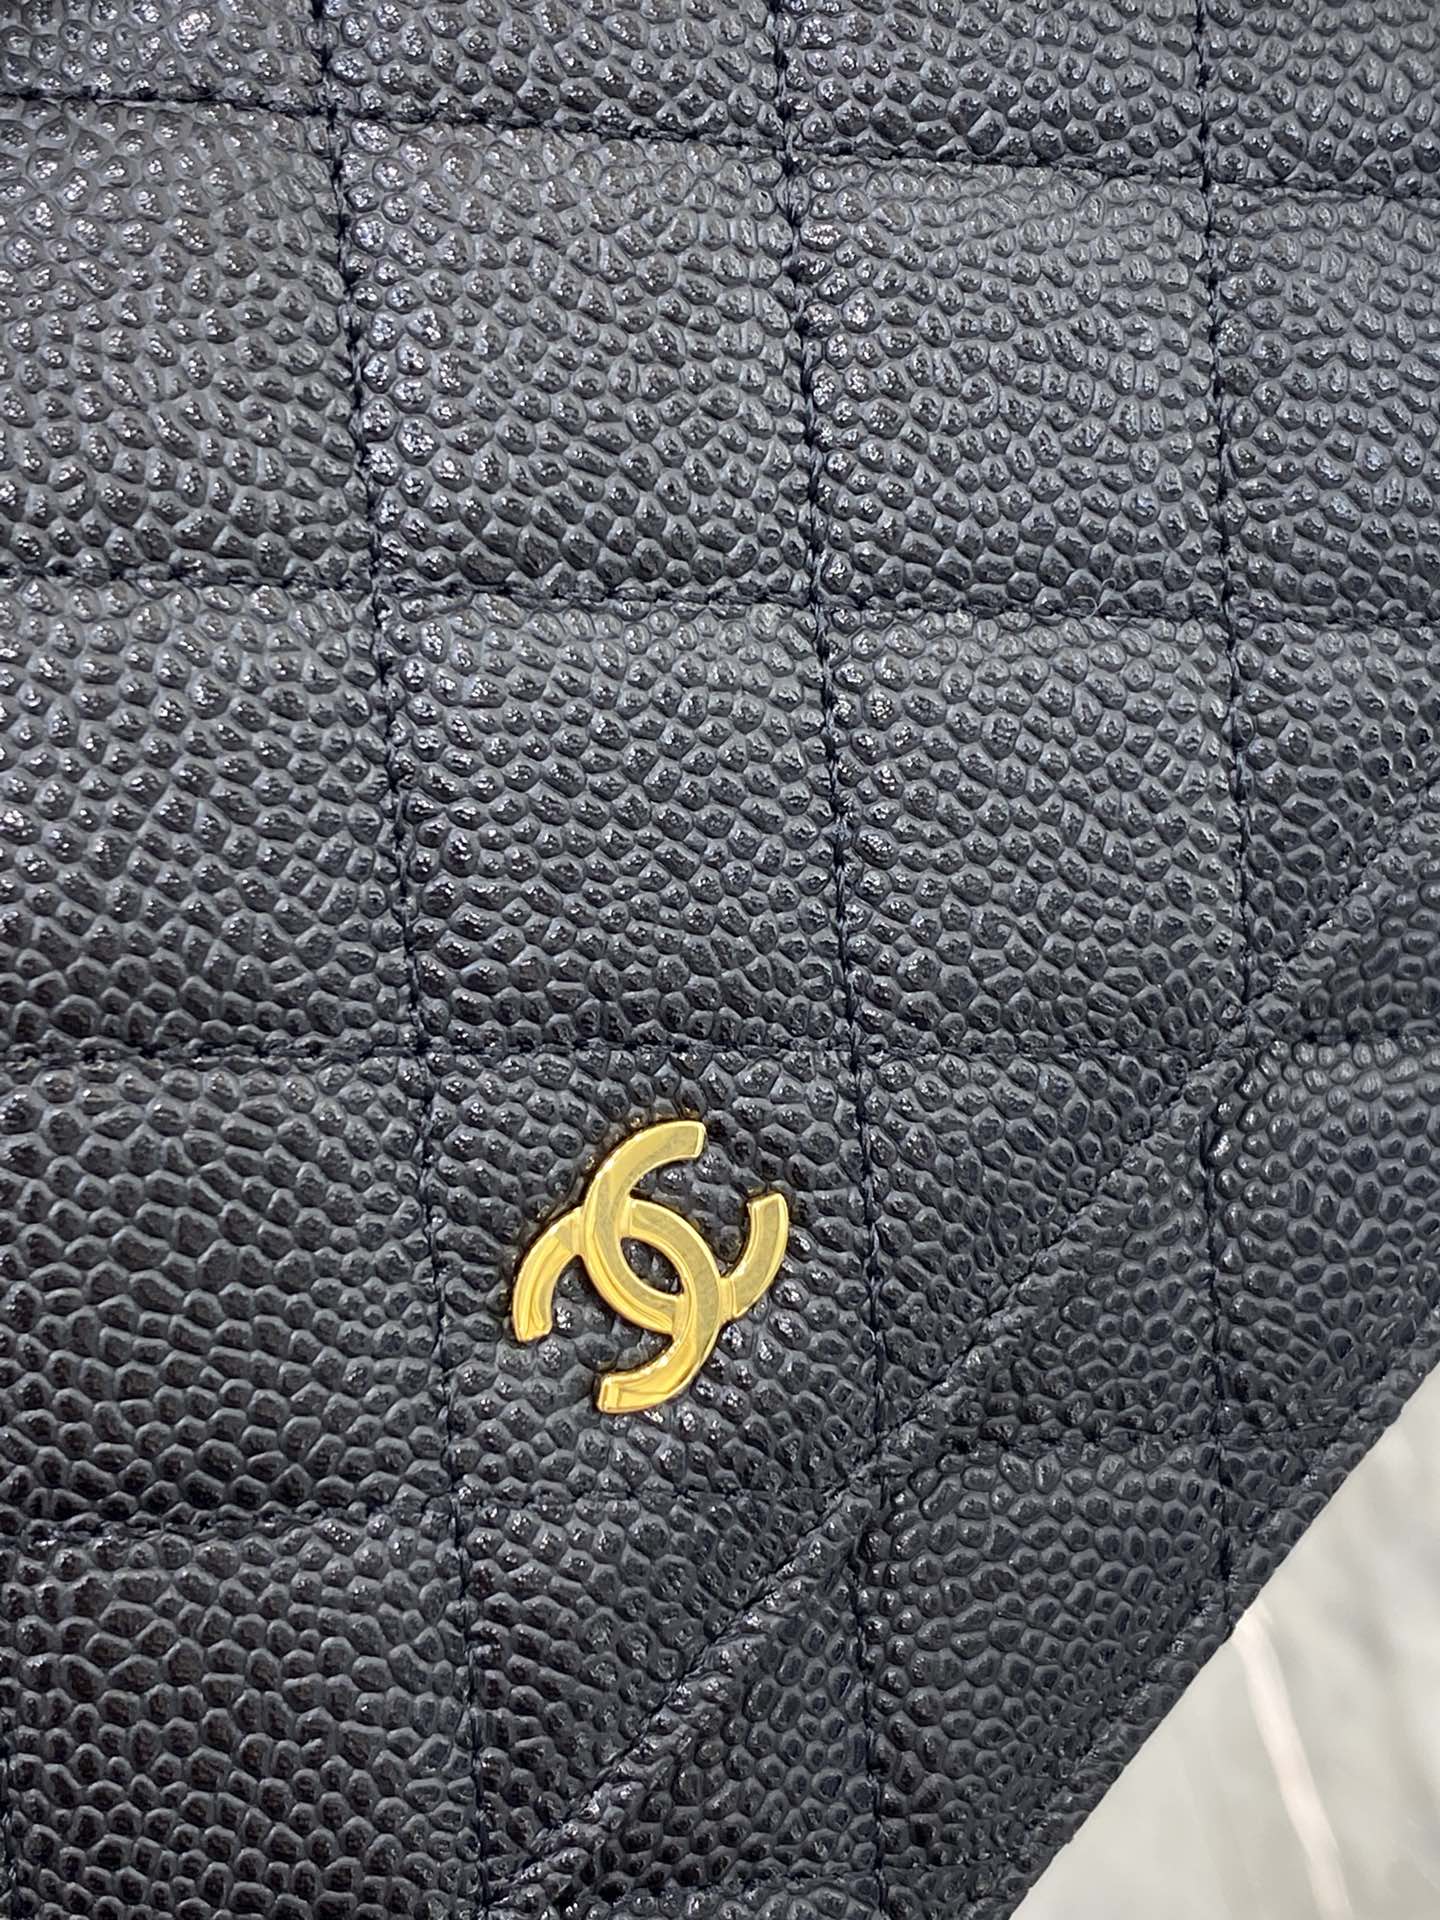 【吸扣版】19新款升级版Chanel woc链条包 顶级皮料五金 原单品质 19.5*12*3.5 克球金